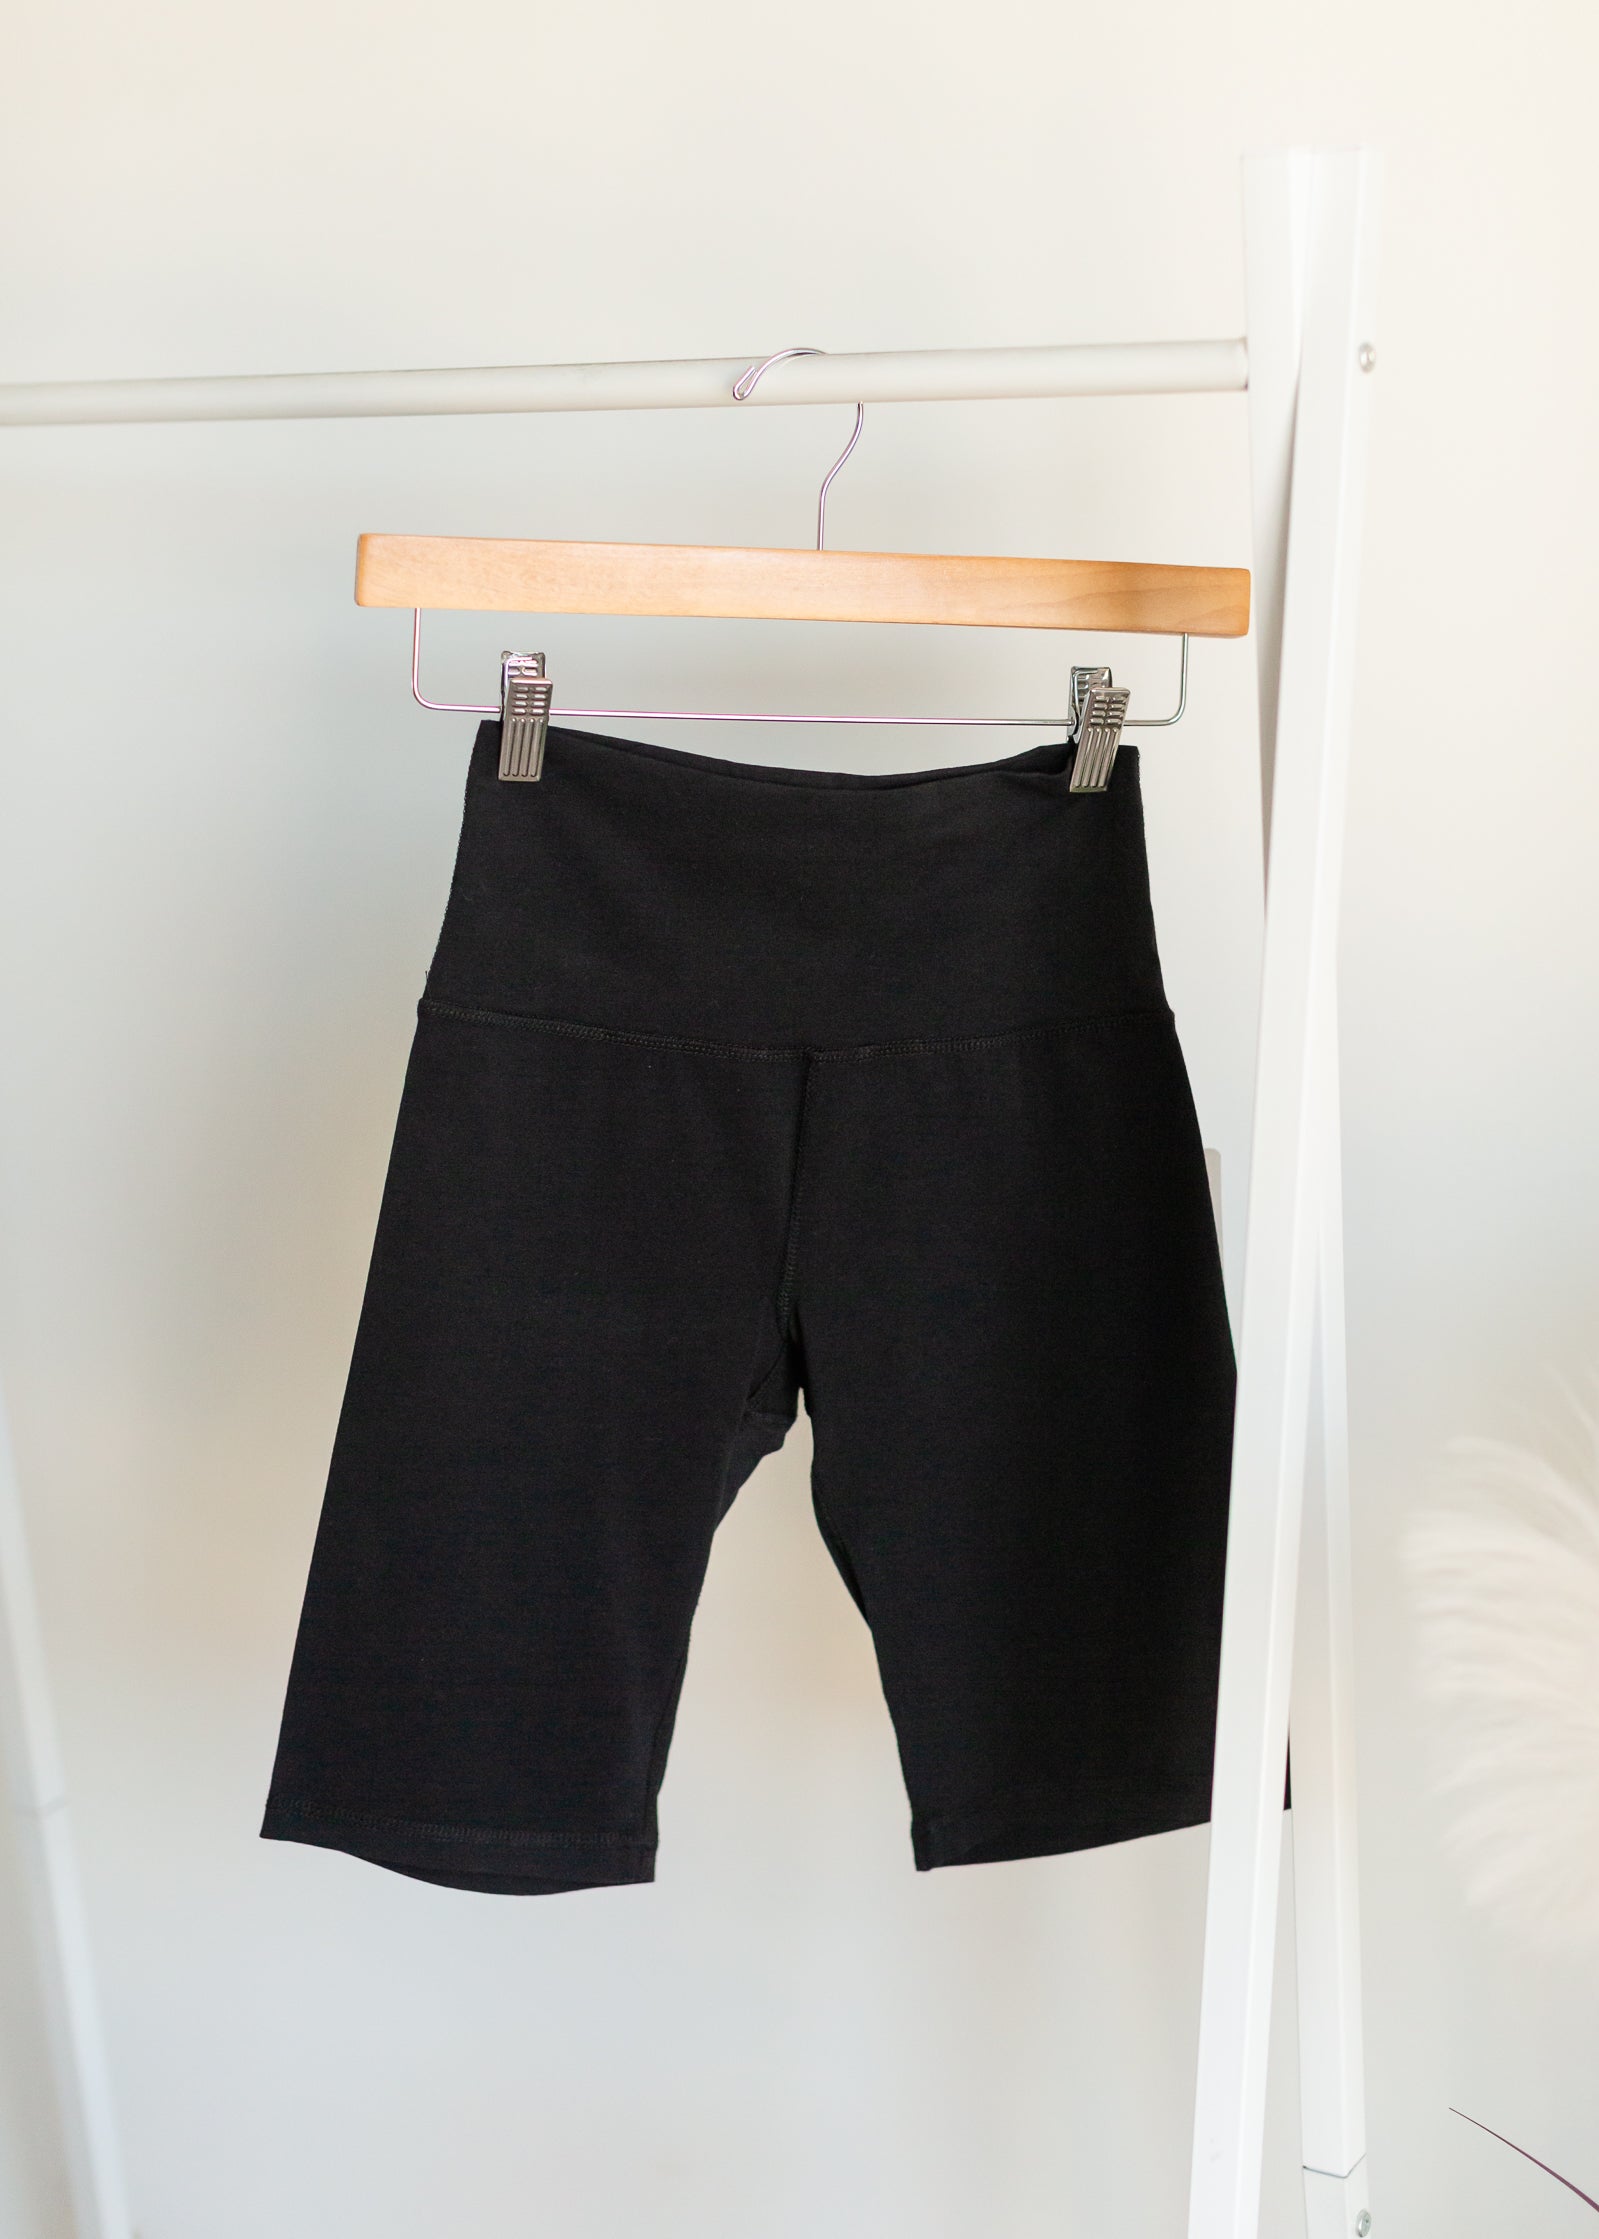 Ladies Knit Biker Shorts - FINAL SALE Skirts Black / XS